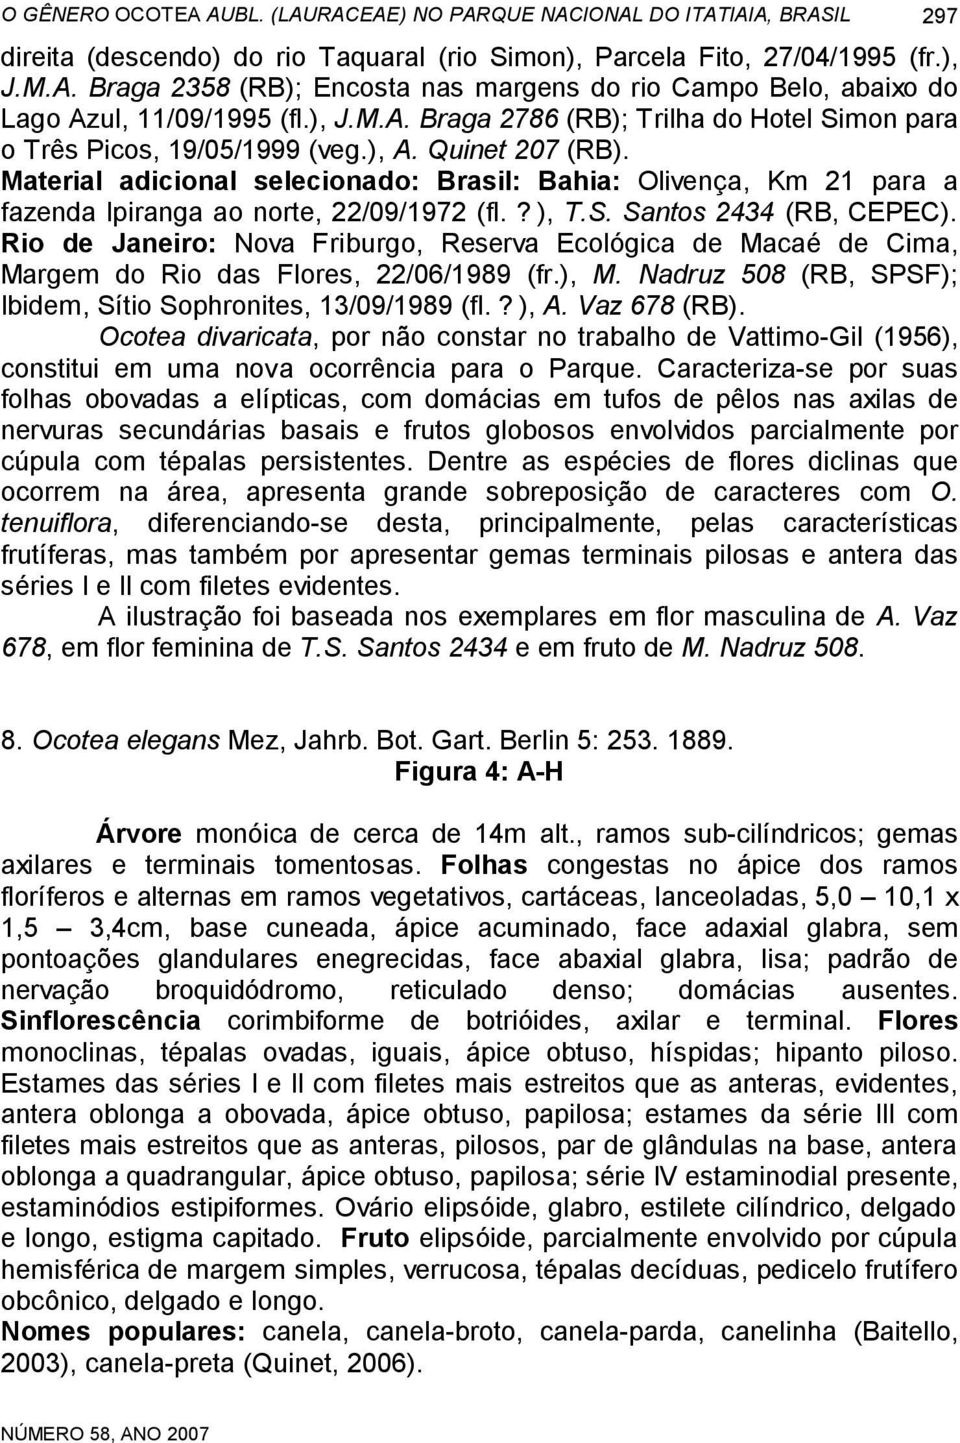 Material adicional selecionado: Brasil: Bahia: Olivença, Km 21 para a fazenda Ipiranga ao norte, 22/09/1972 (fl.?), T.S. Santos 2434 (RB, CEPEC).